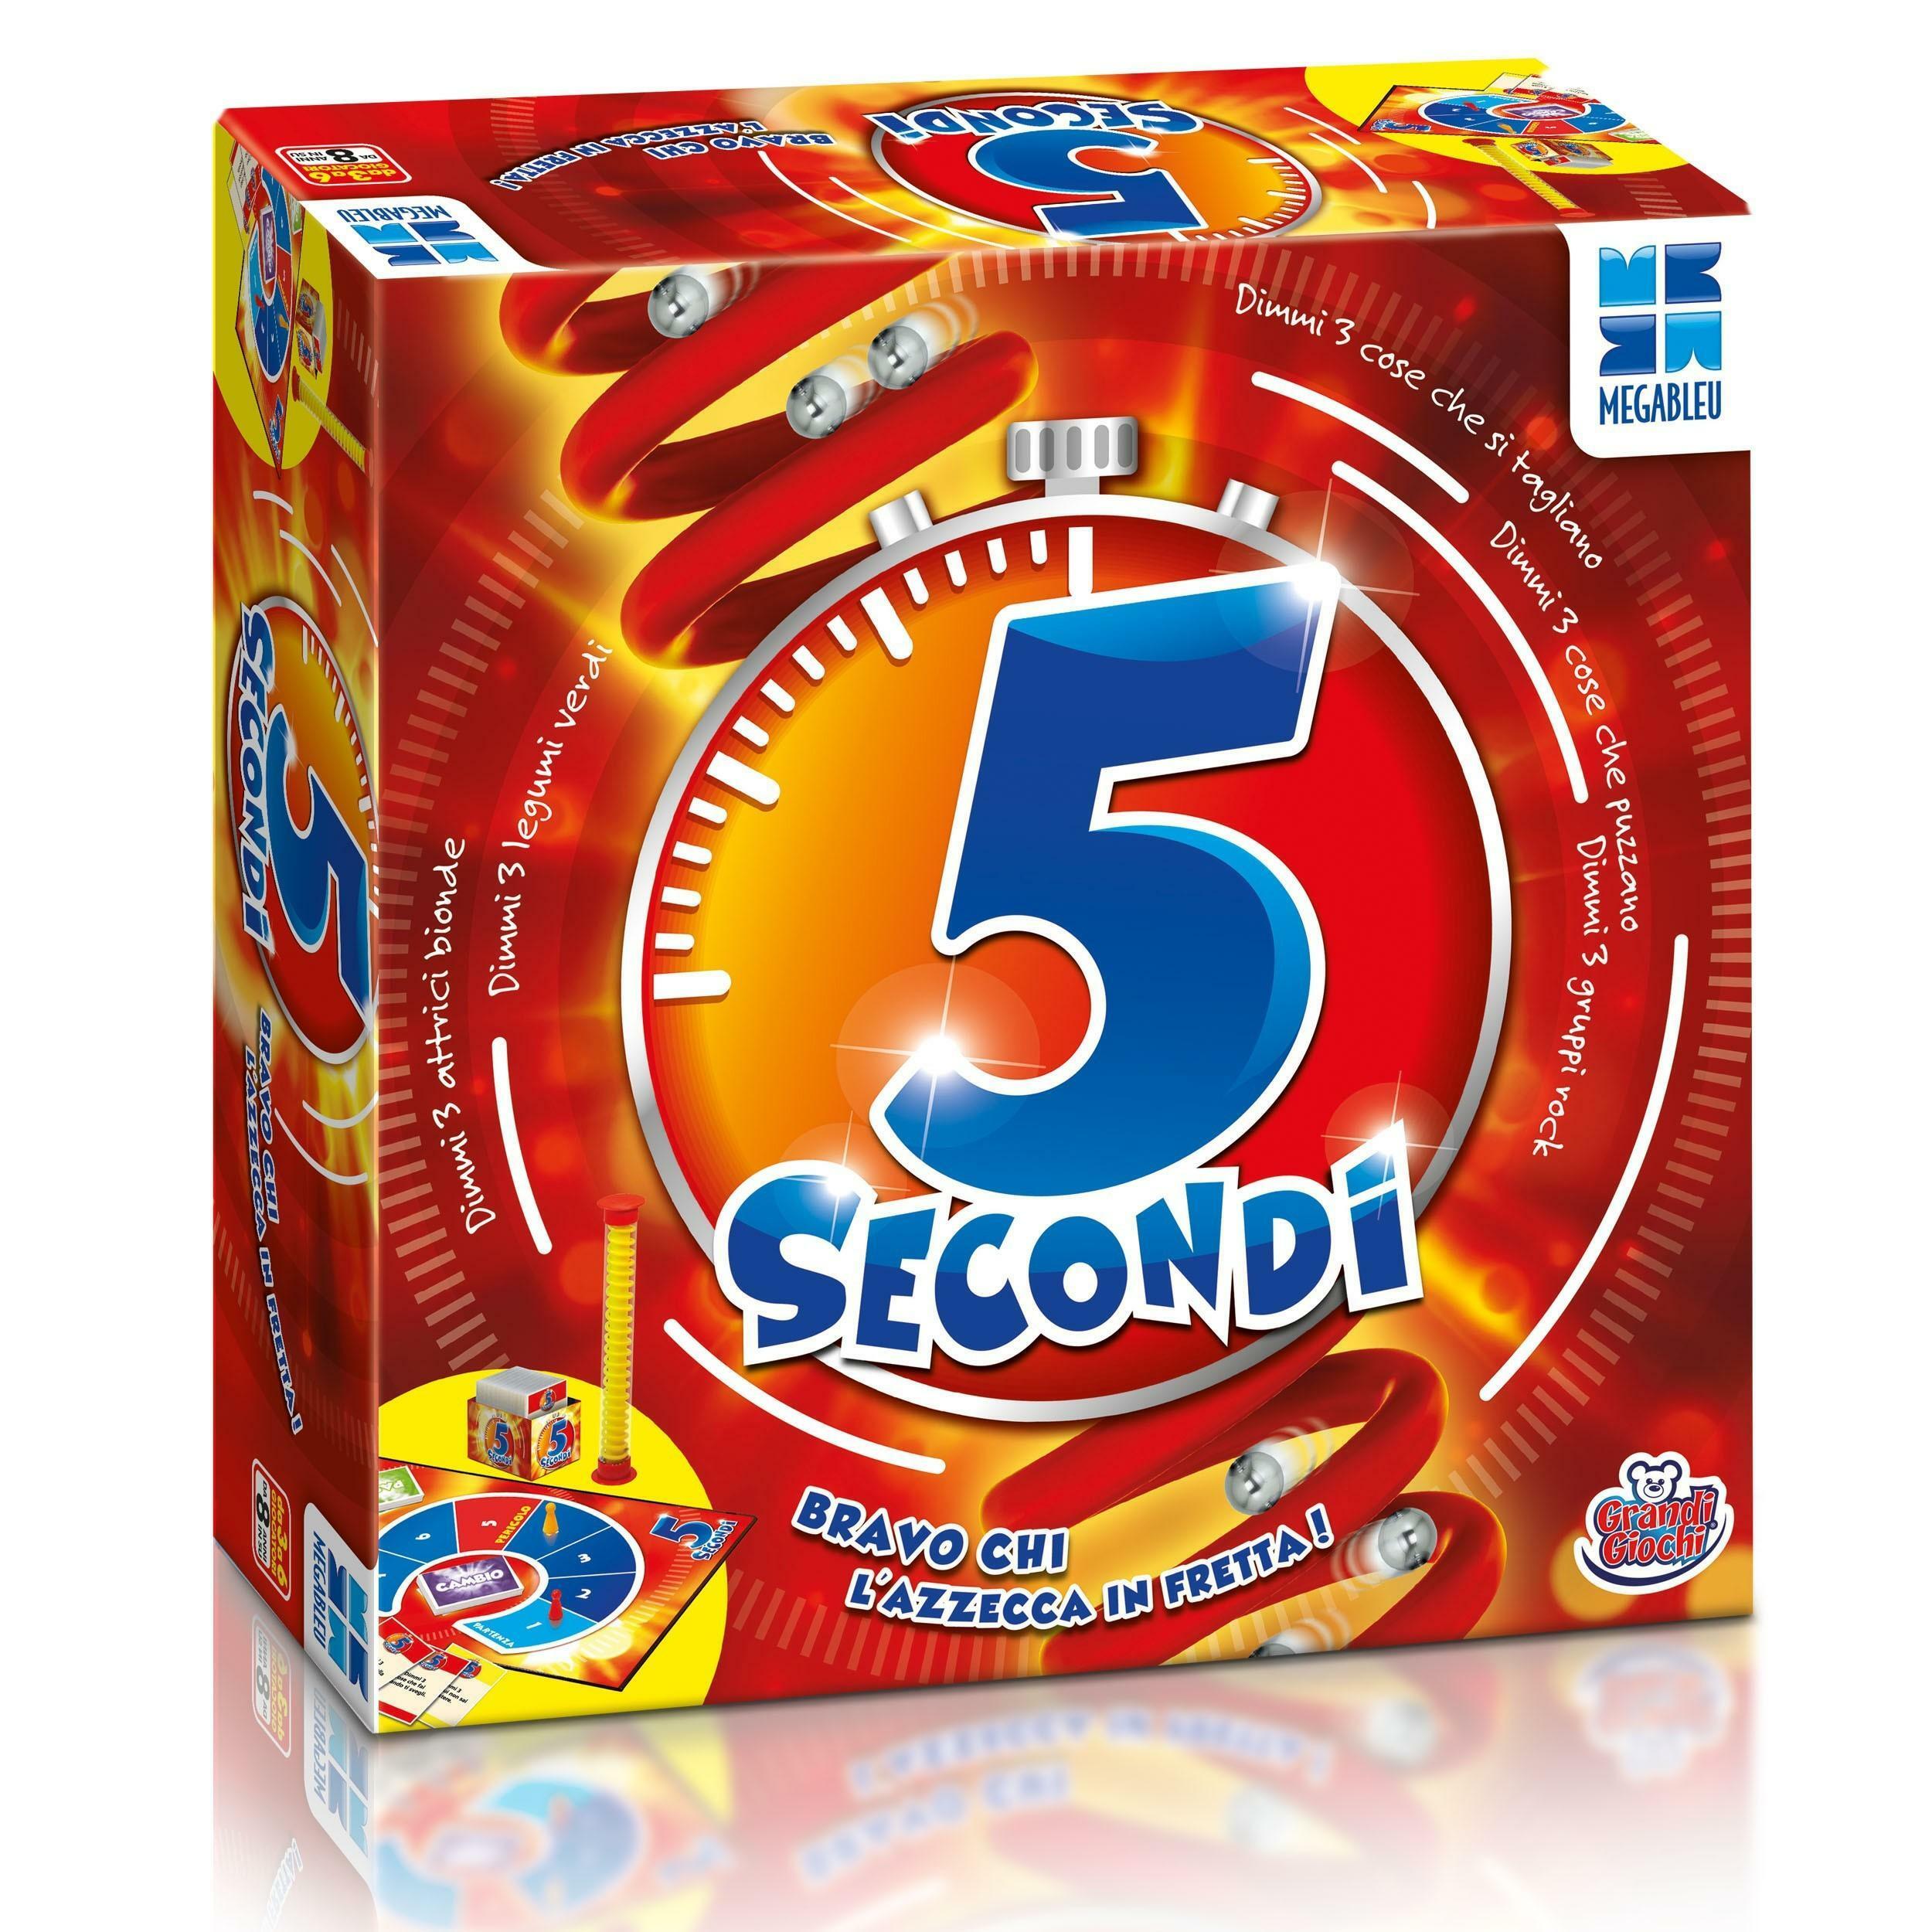 grandi giochi gioco 5 secondi - versione italiana